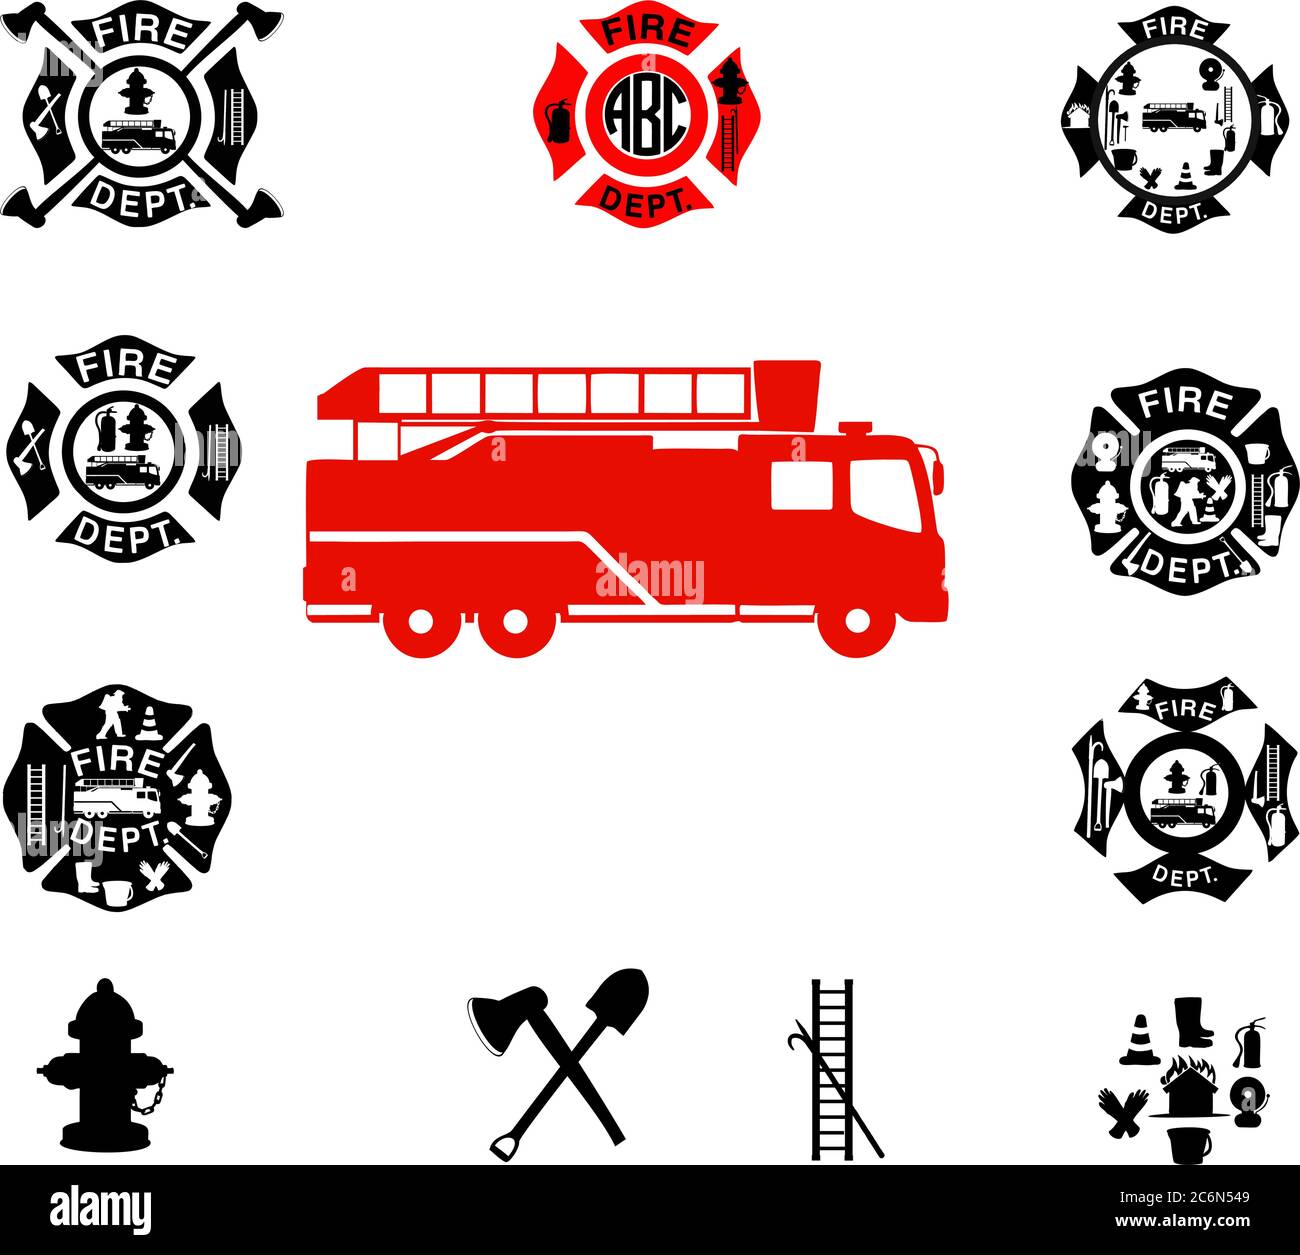 Embleme der Feuerwehr, Feuerwehr. Vektor Stock Vektor